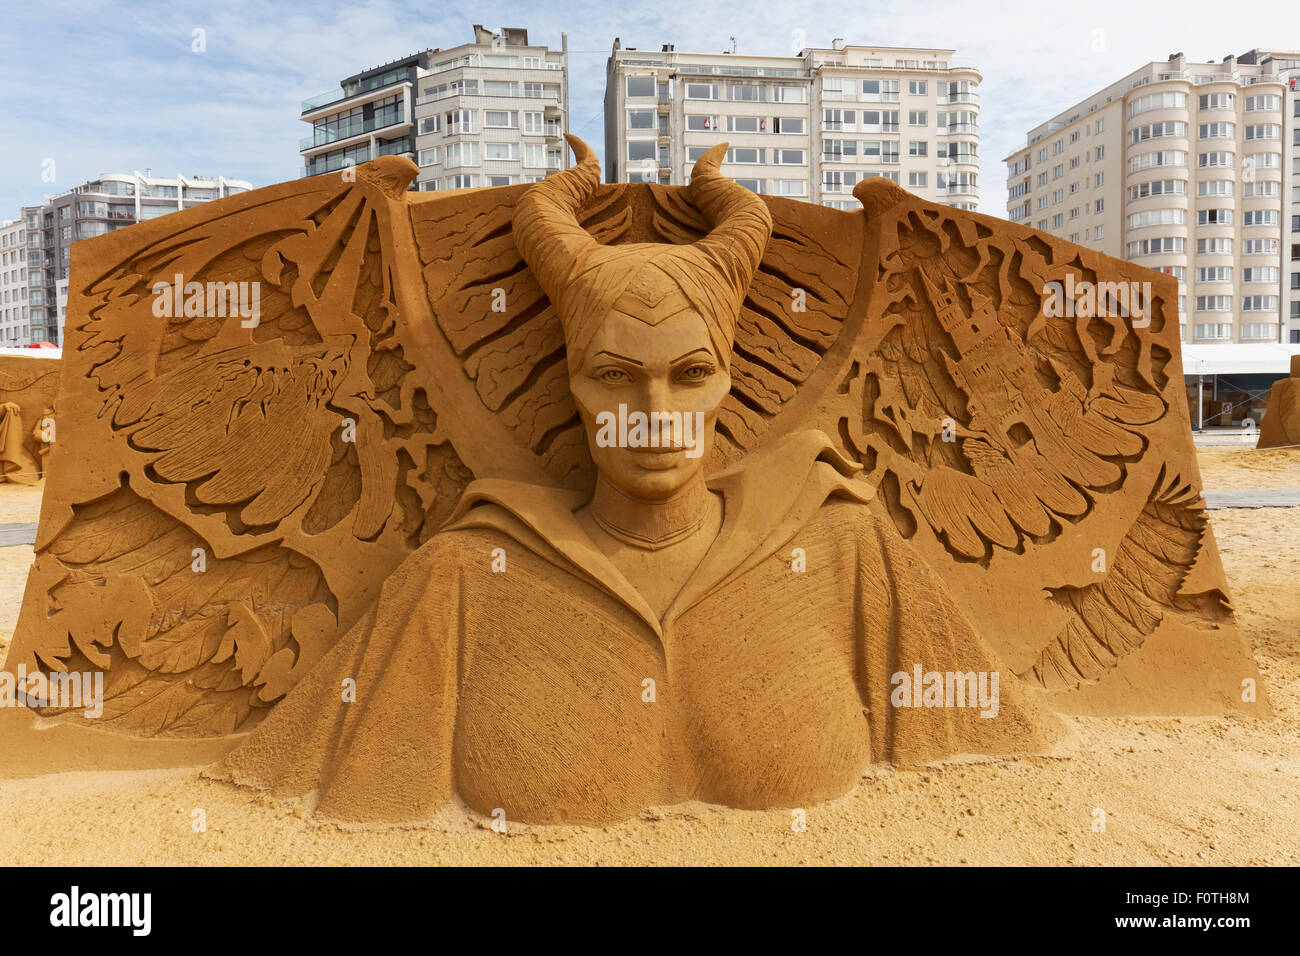 Sculpture de sable, de Walt Disney, maléfique film festival de sculptures  de sable, soleil de l'été congelé, Oostende Flandre Occidentale Photo Stock  - Alamy